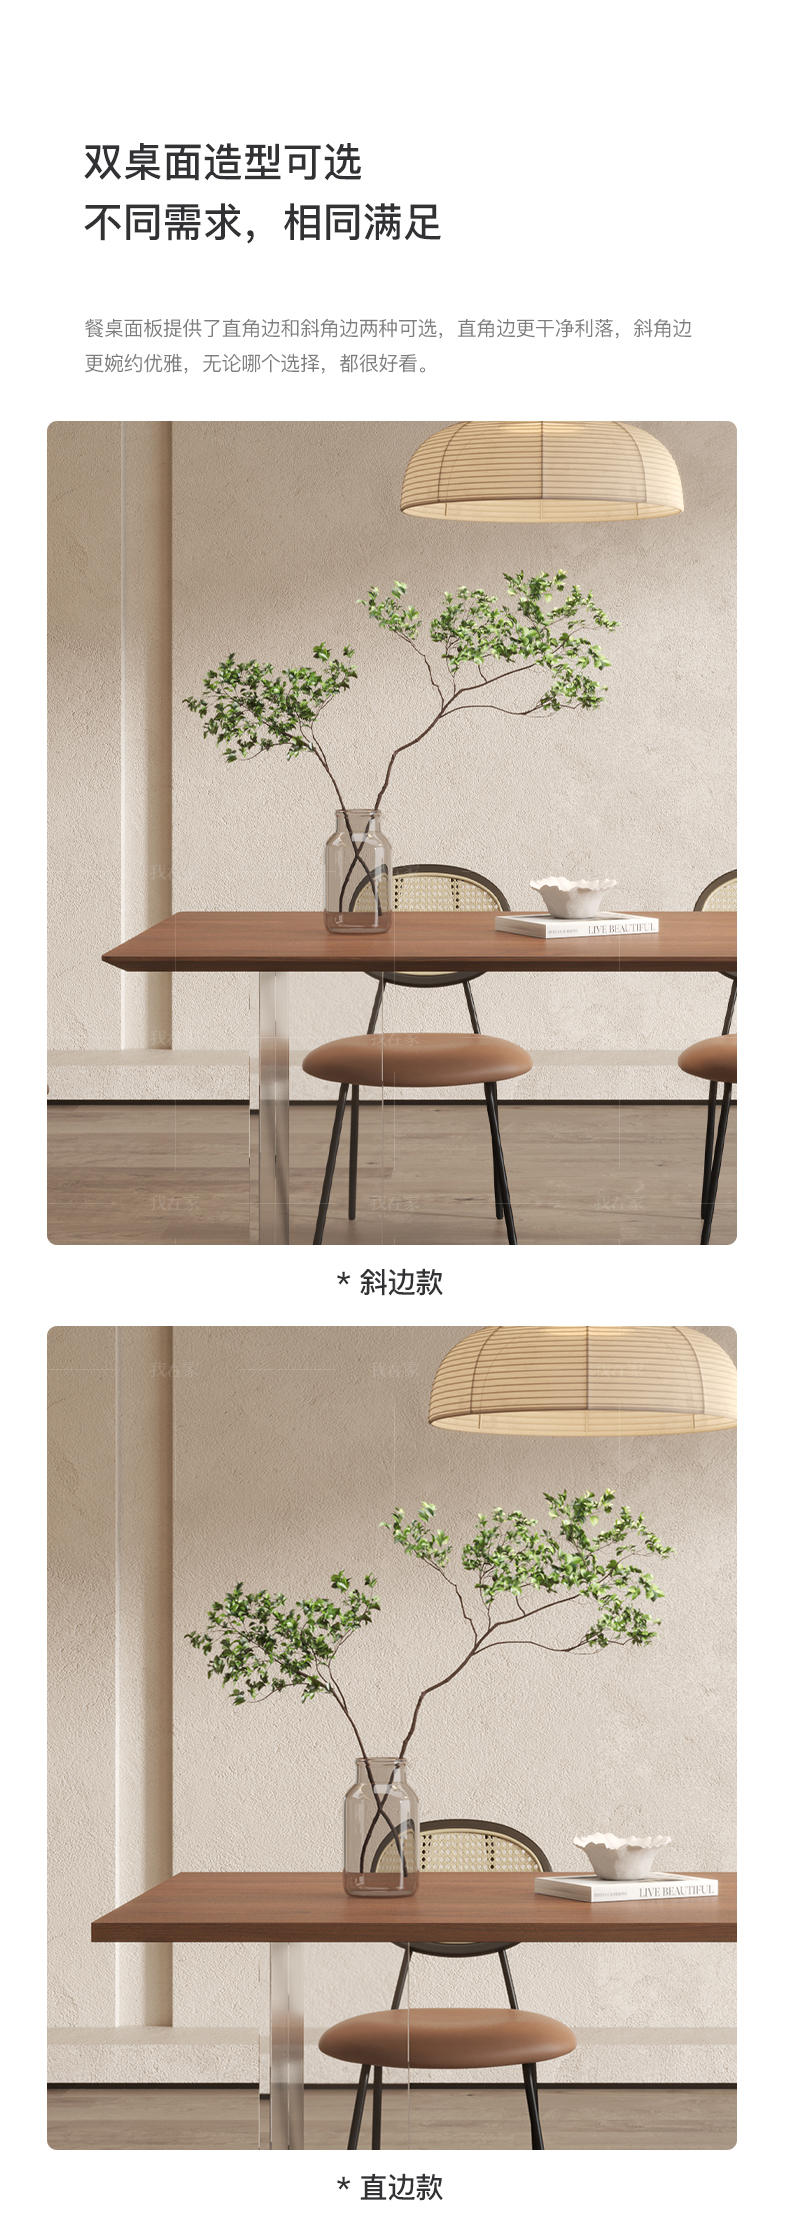 中古风风格悬浮餐桌的家具详细介绍